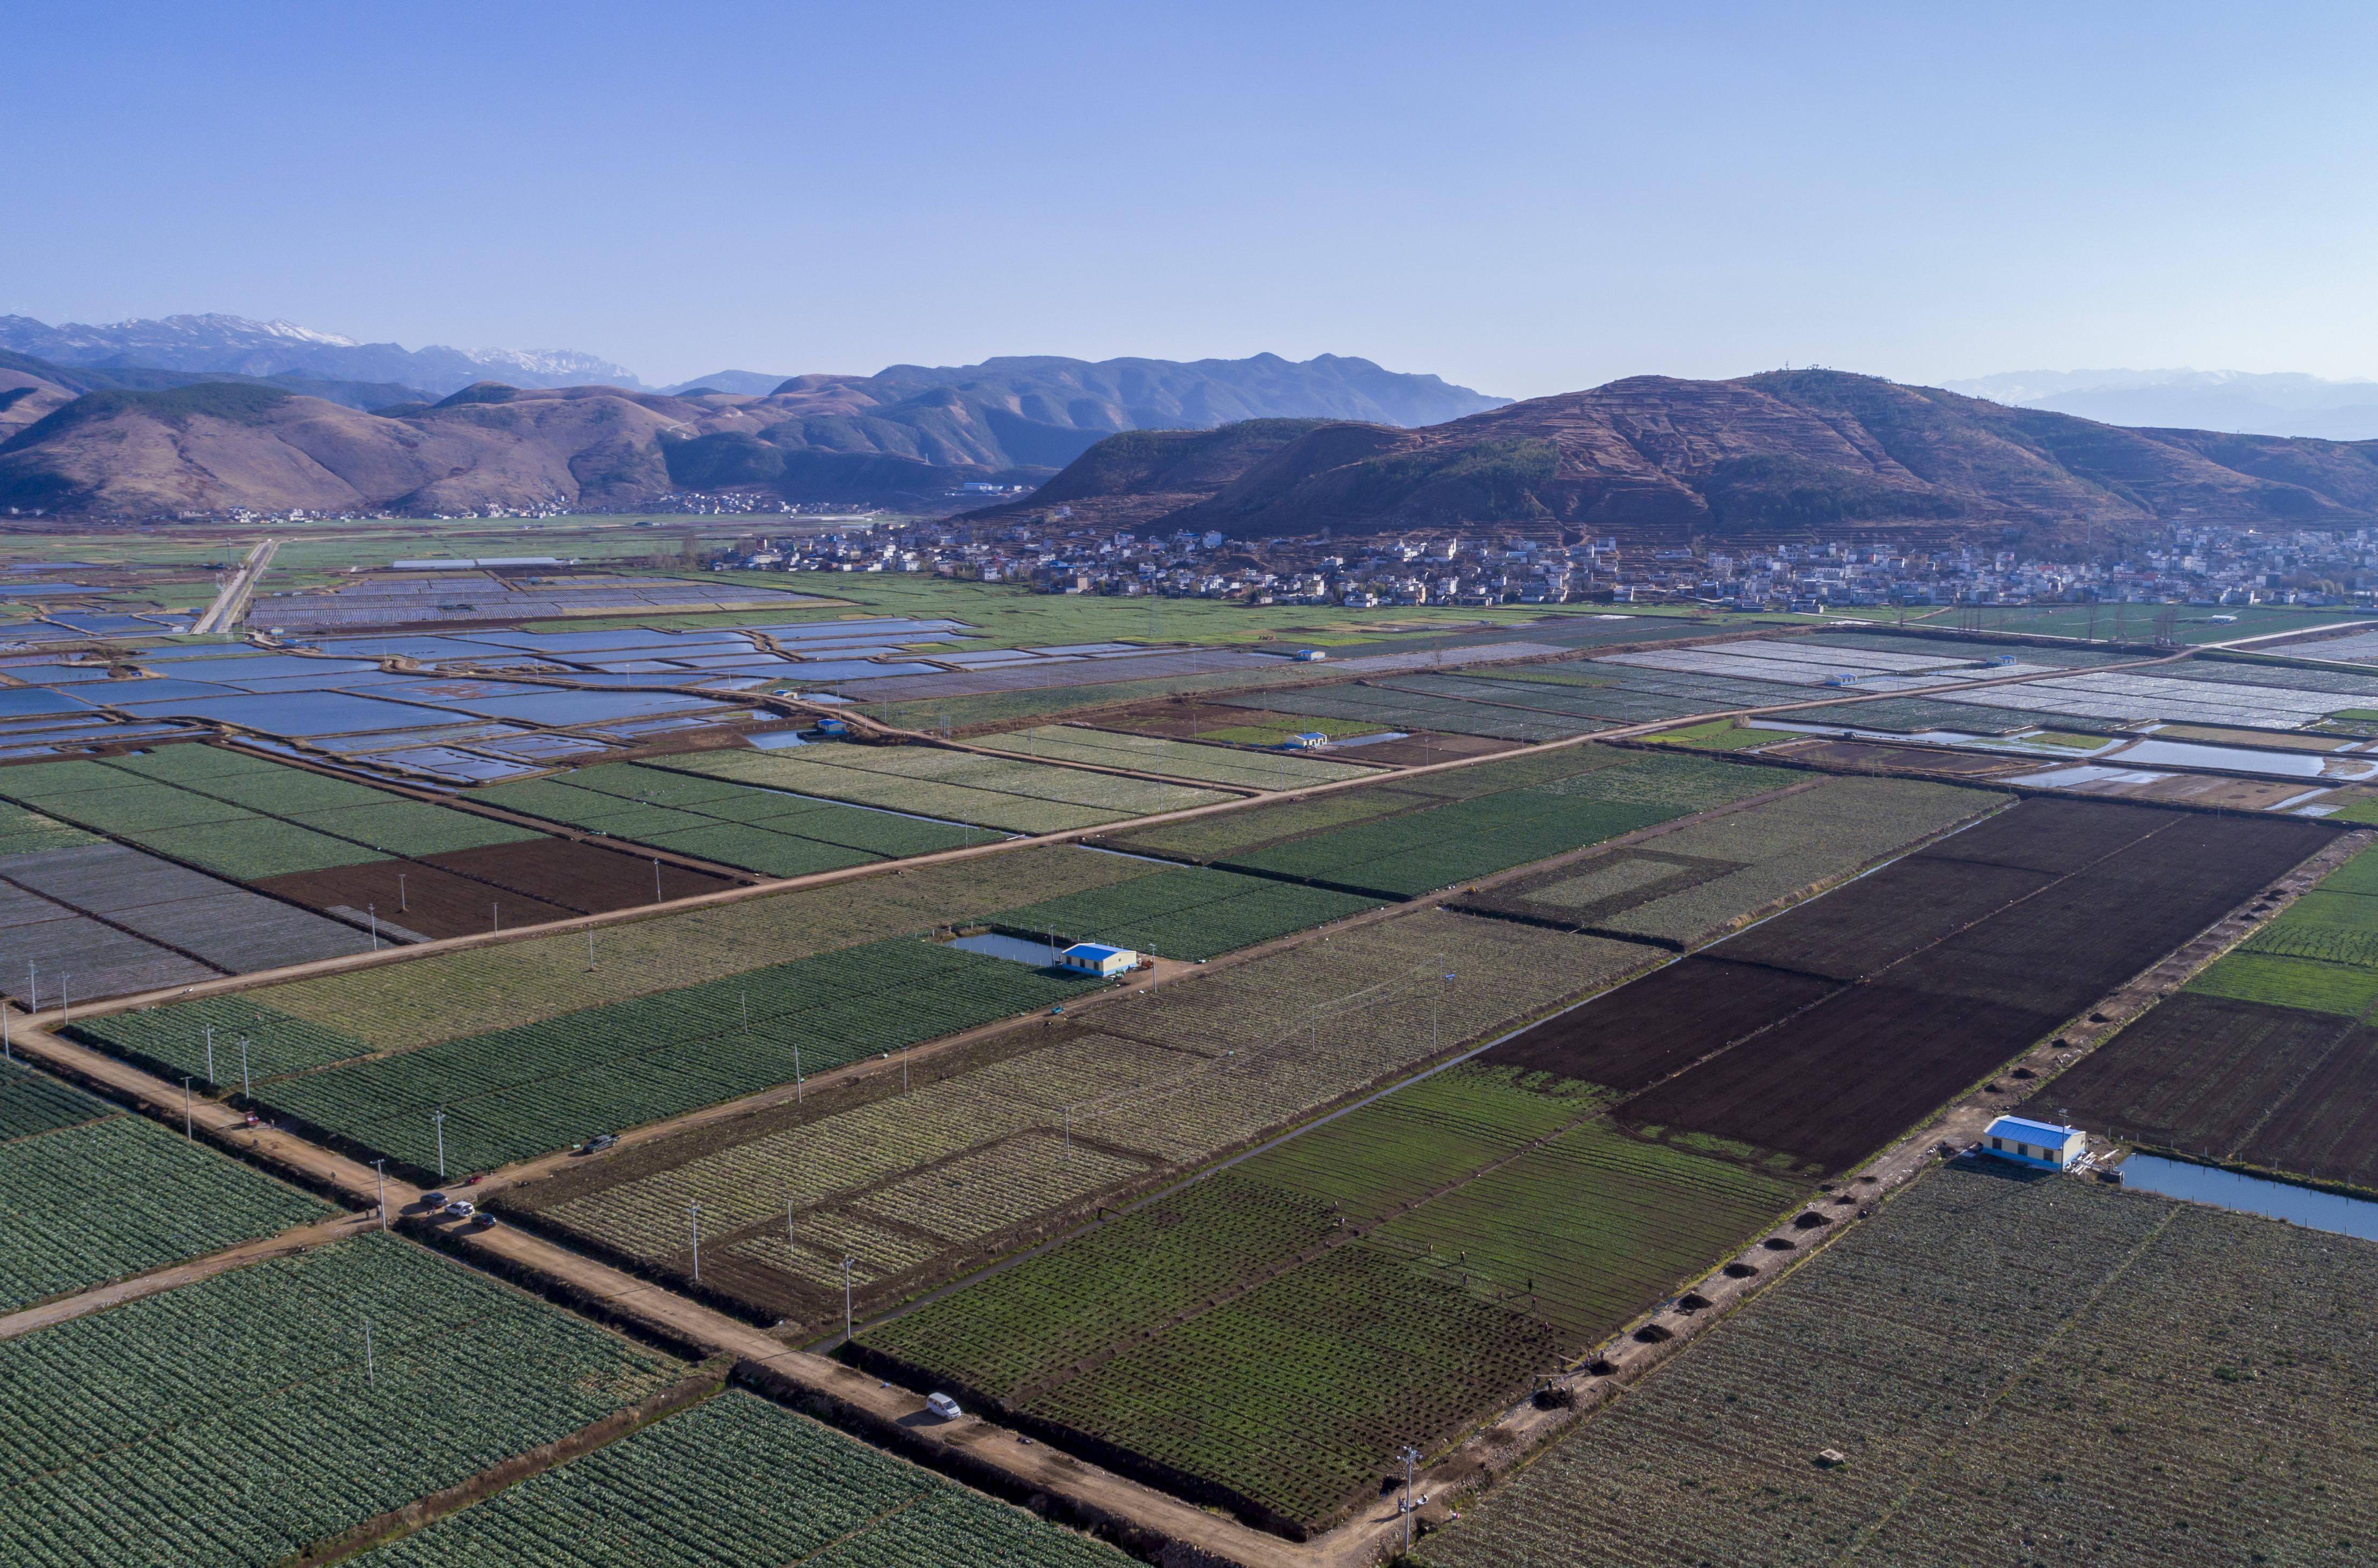 这是3月2日拍摄的云南省会泽县娜姑镇蔬菜基地一景(无人机照片)